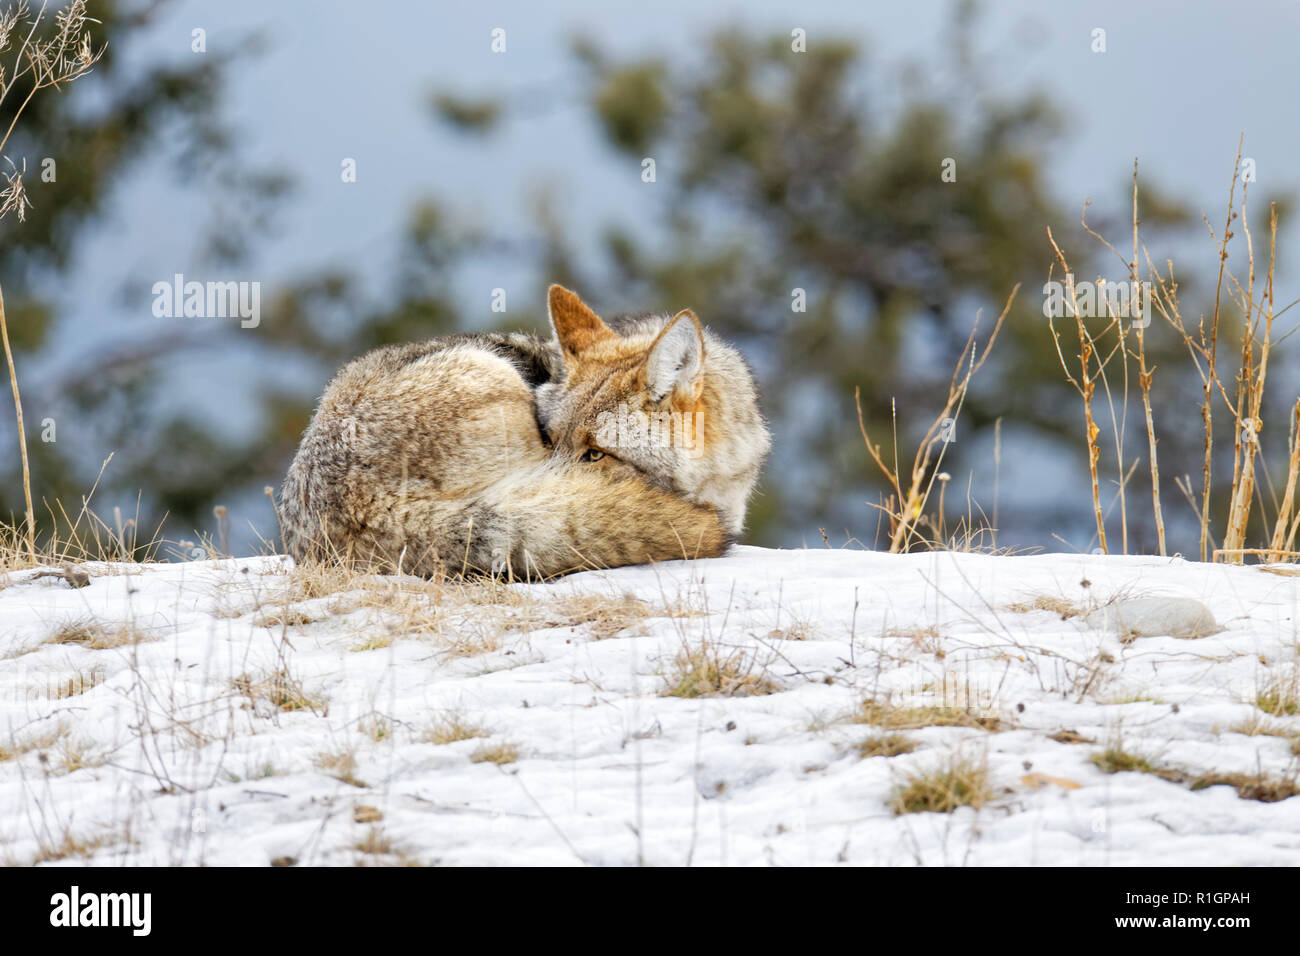 CU 42 757,09771 dormir recroquevillé Coyote essayant de garder au chaud, les yeux à moitié ouvertes peeking out, d'herbe d'une colline d'herbe en hiver froid neige, arbres contexte Banque D'Images